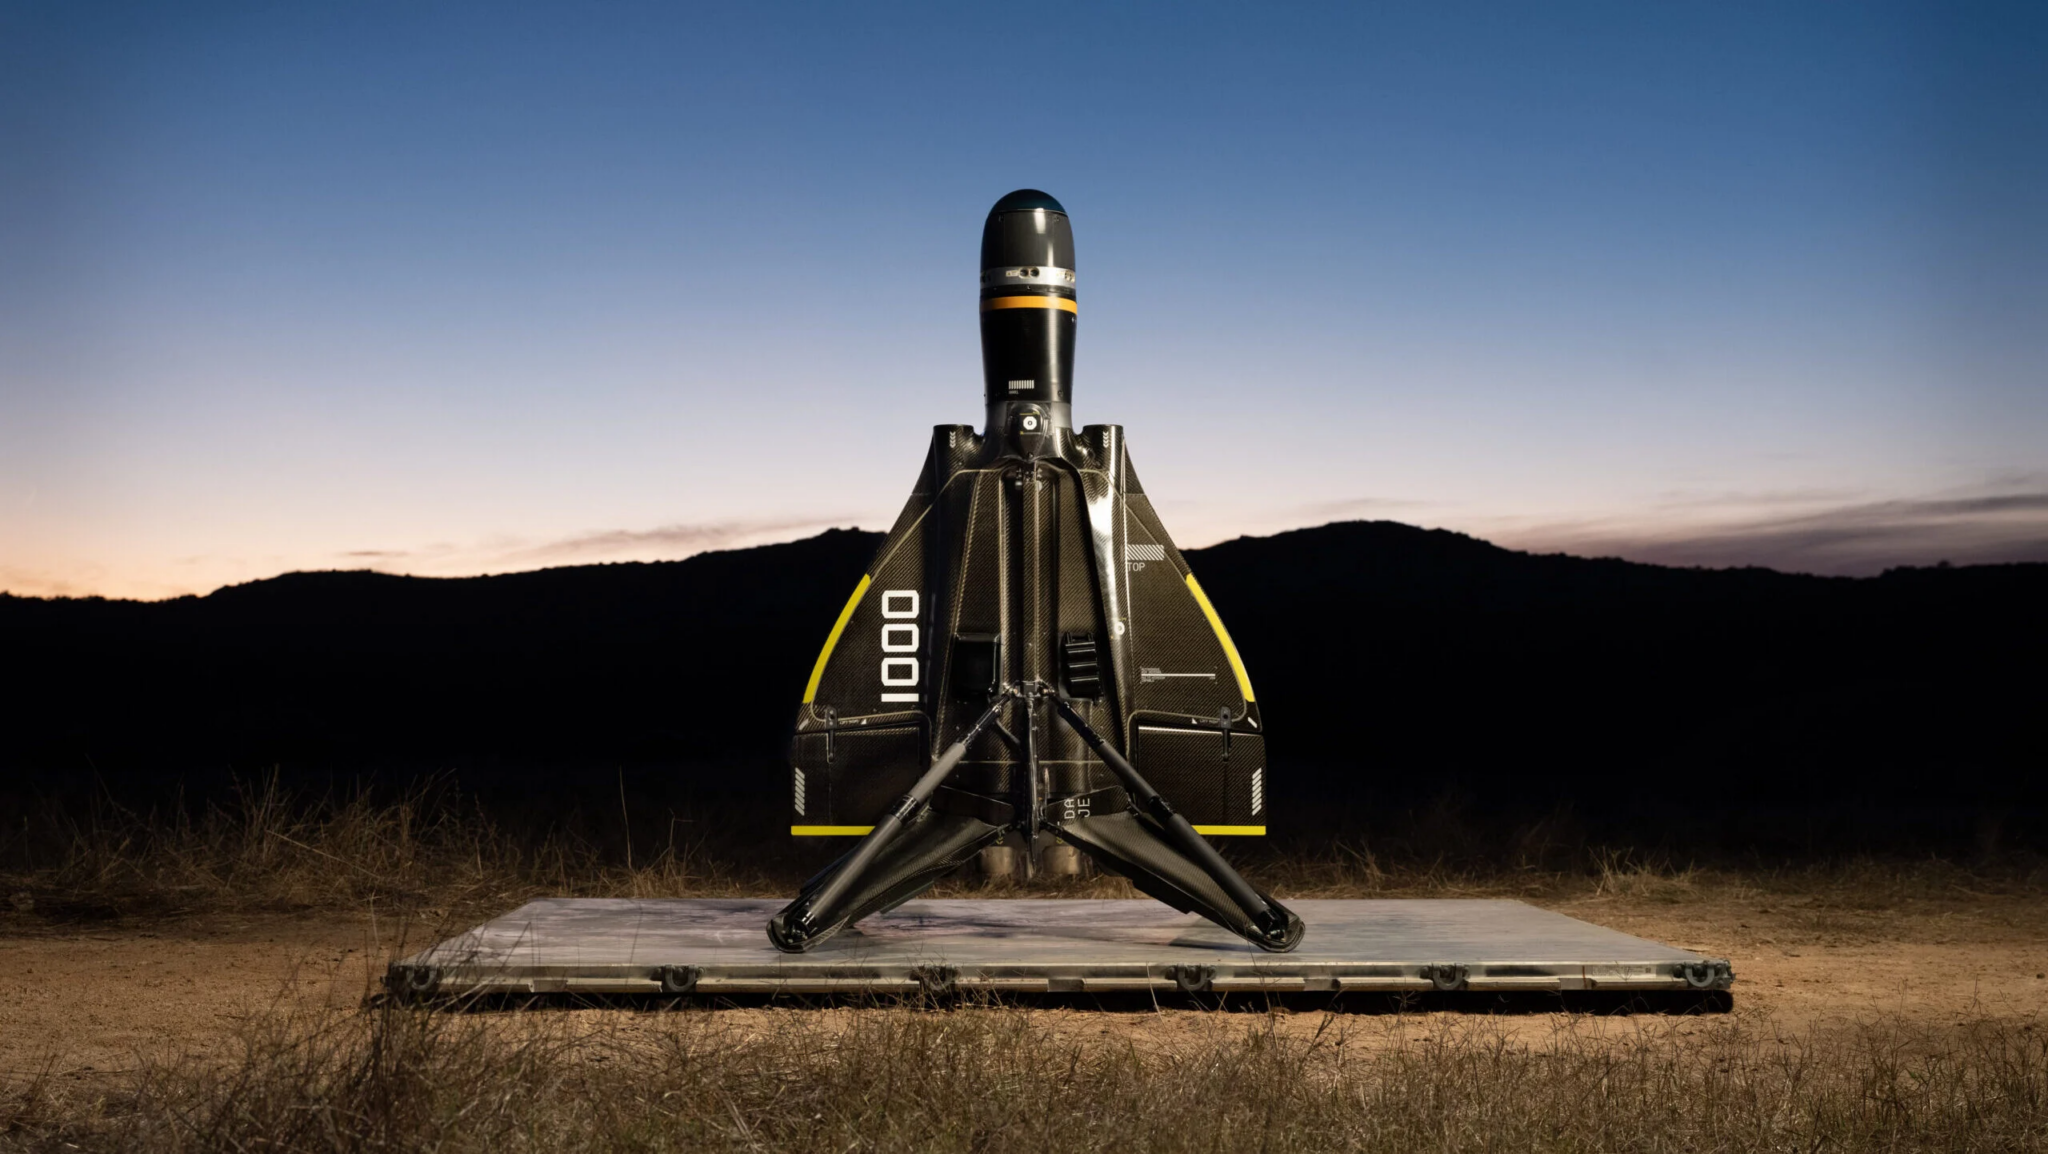 Anduril Roadrunner är världens första återanvändbara obemannade jaktplan som kan landa som SpaceX:s Falcon 9-raket